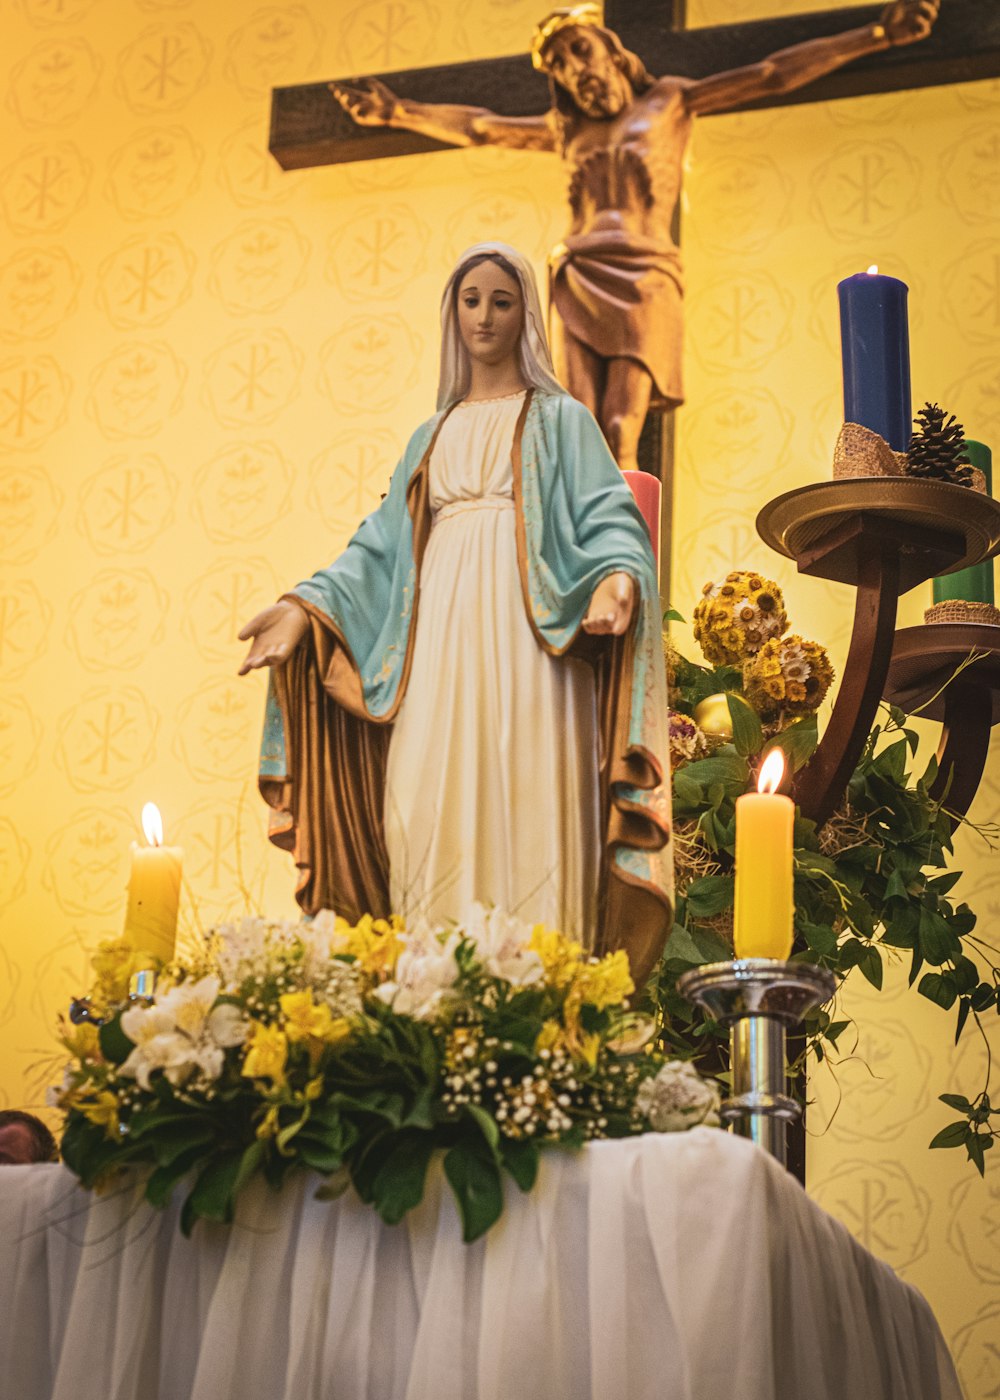 Statue der Jungfrau Maria